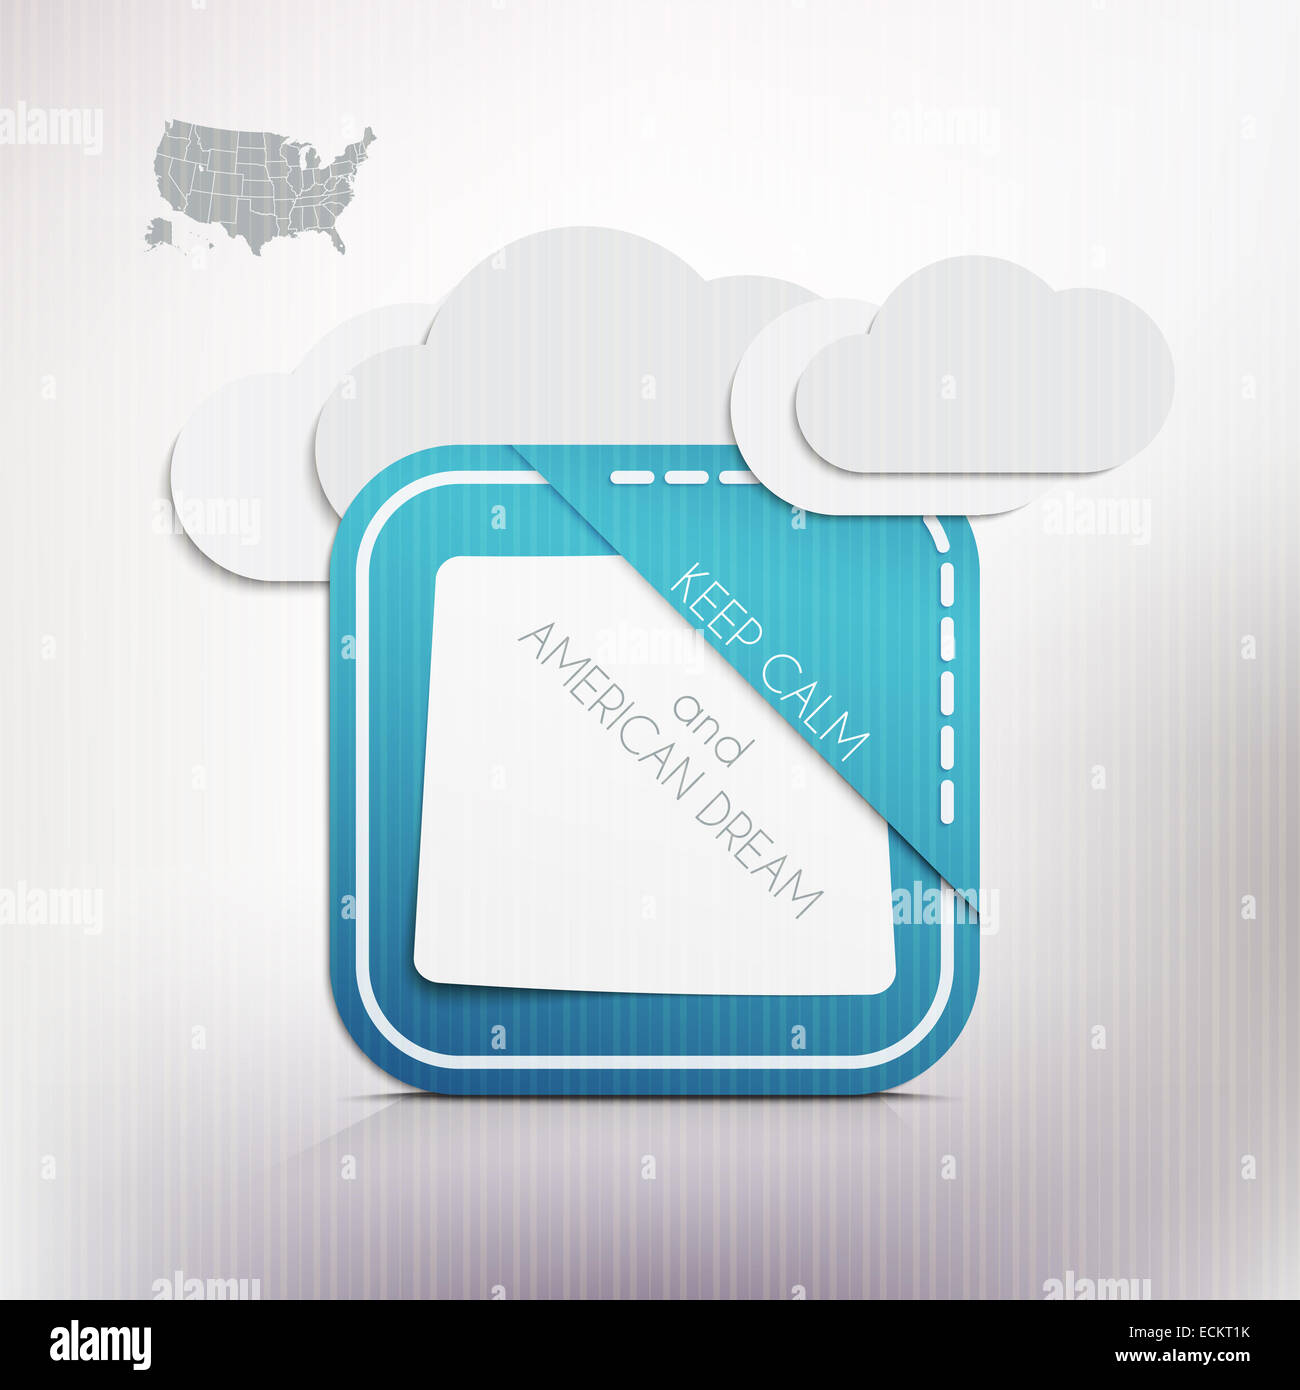 USA map, nuages et papier rappel à garder son calme et de rêve américain message. vector graphic design Banque D'Images